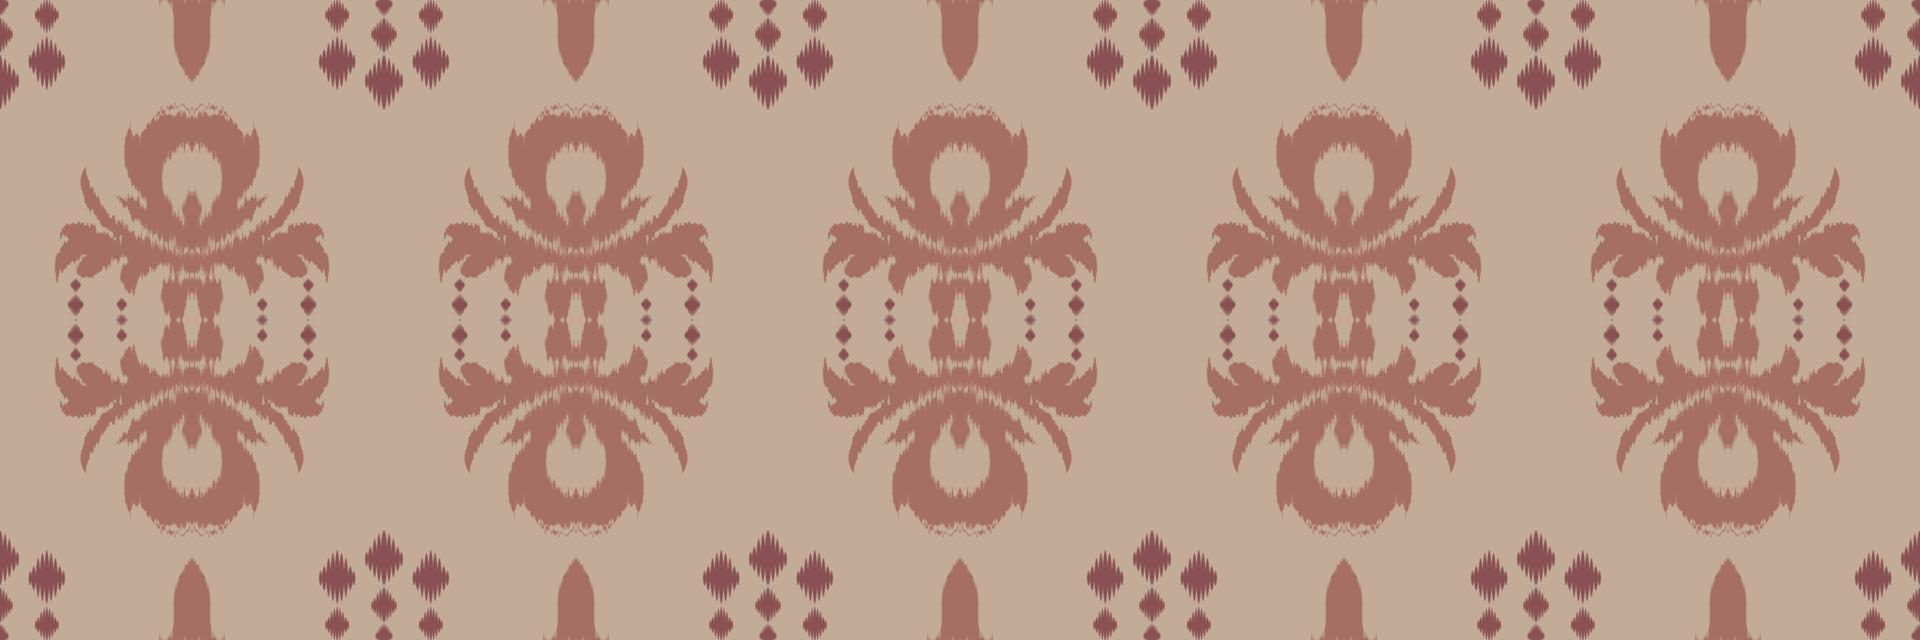 ikkat o ikat diamante batik textil patrón sin costuras diseño vectorial digital para imprimir saree kurti borneo borde de tela símbolos de pincel muestras de algodón vector